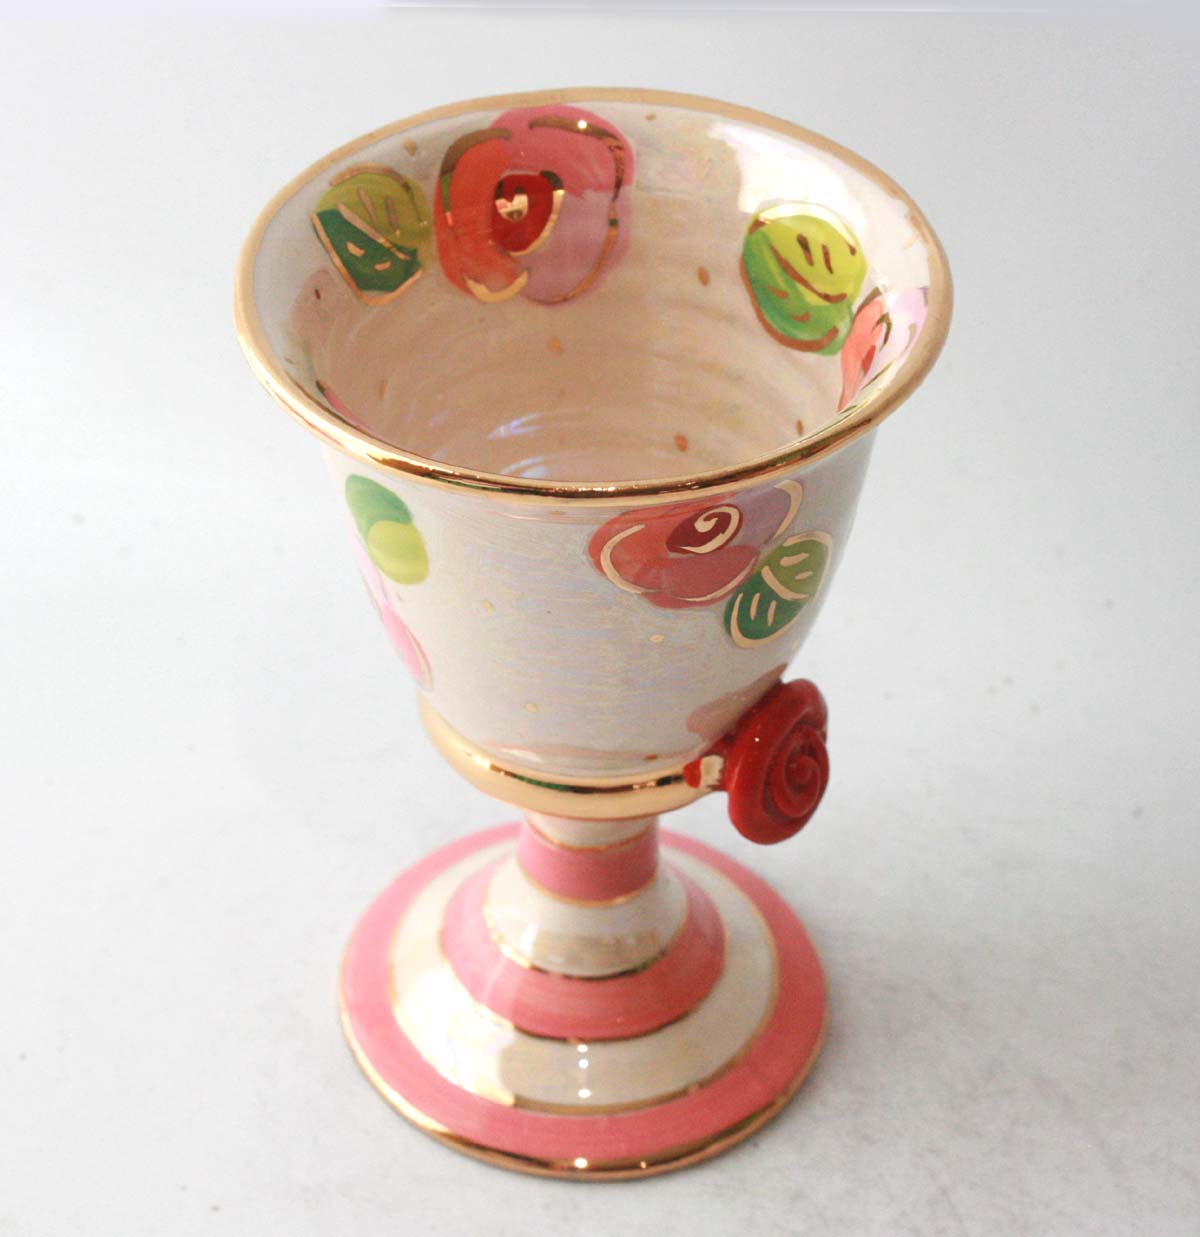 Goblet in Pink Rosebud on Iridescent White